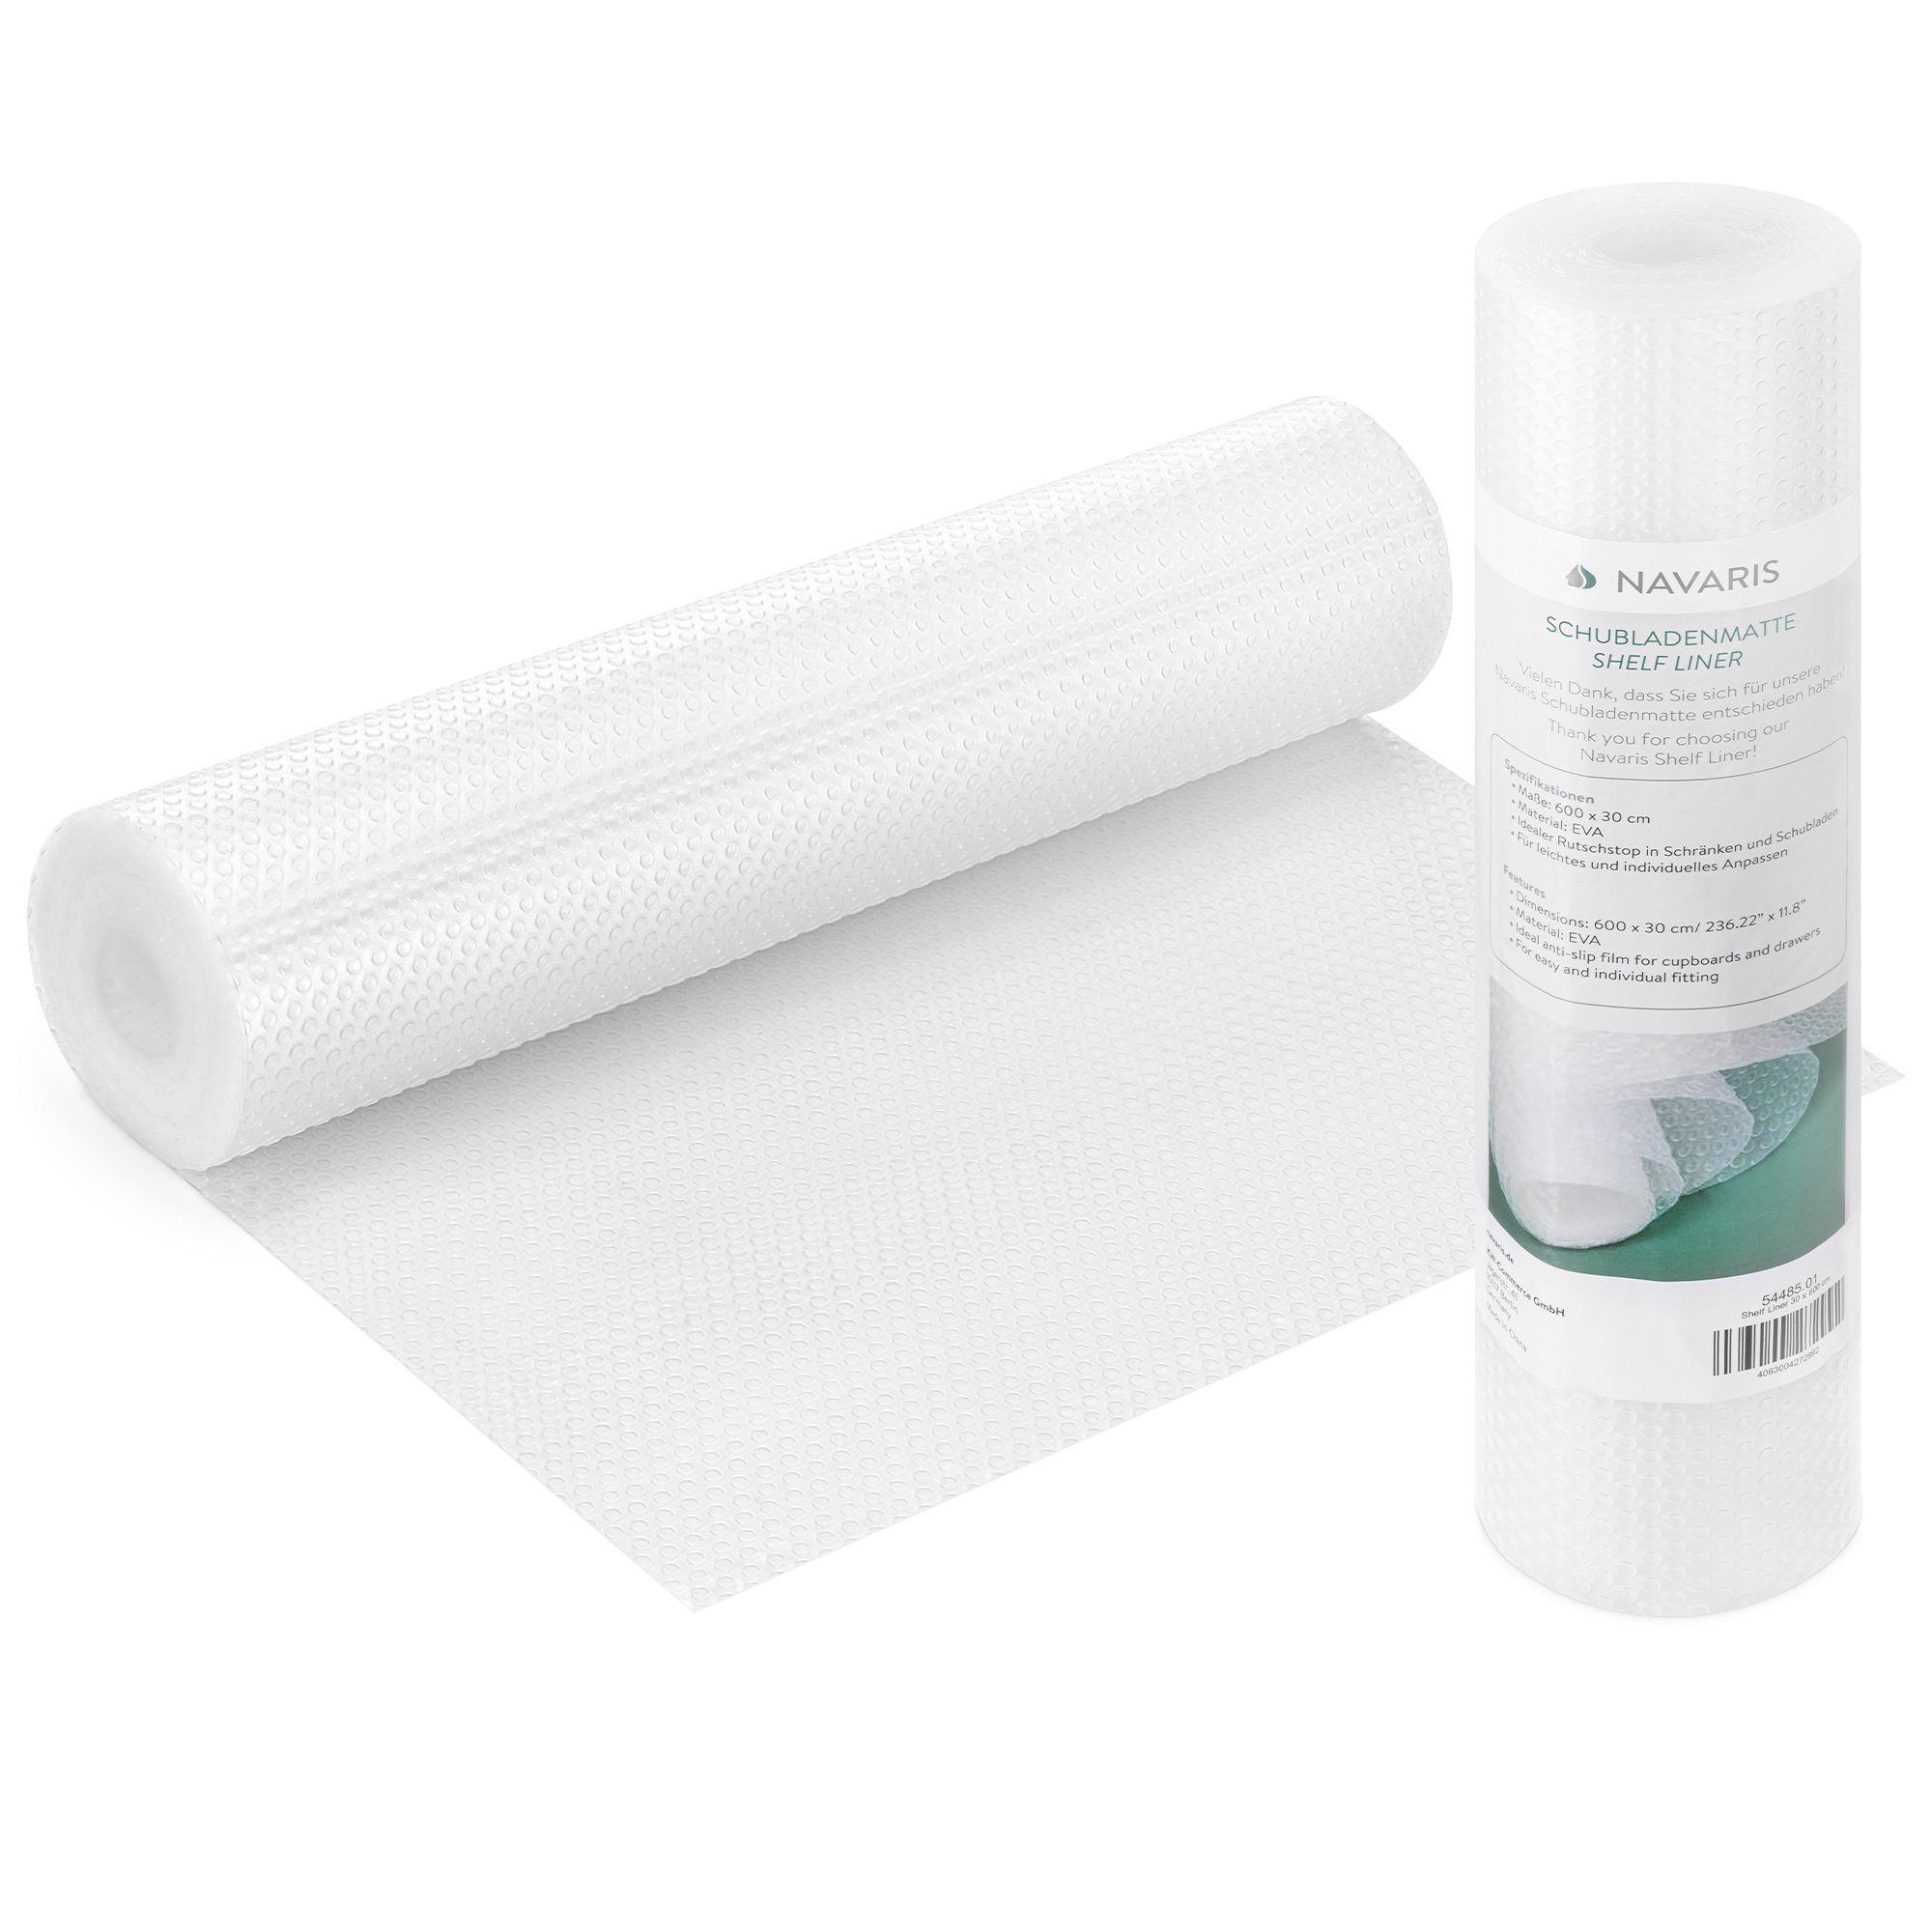 SO-TECH® Schubladenmatte Antirutschmatte Orga-Grip Top passend für